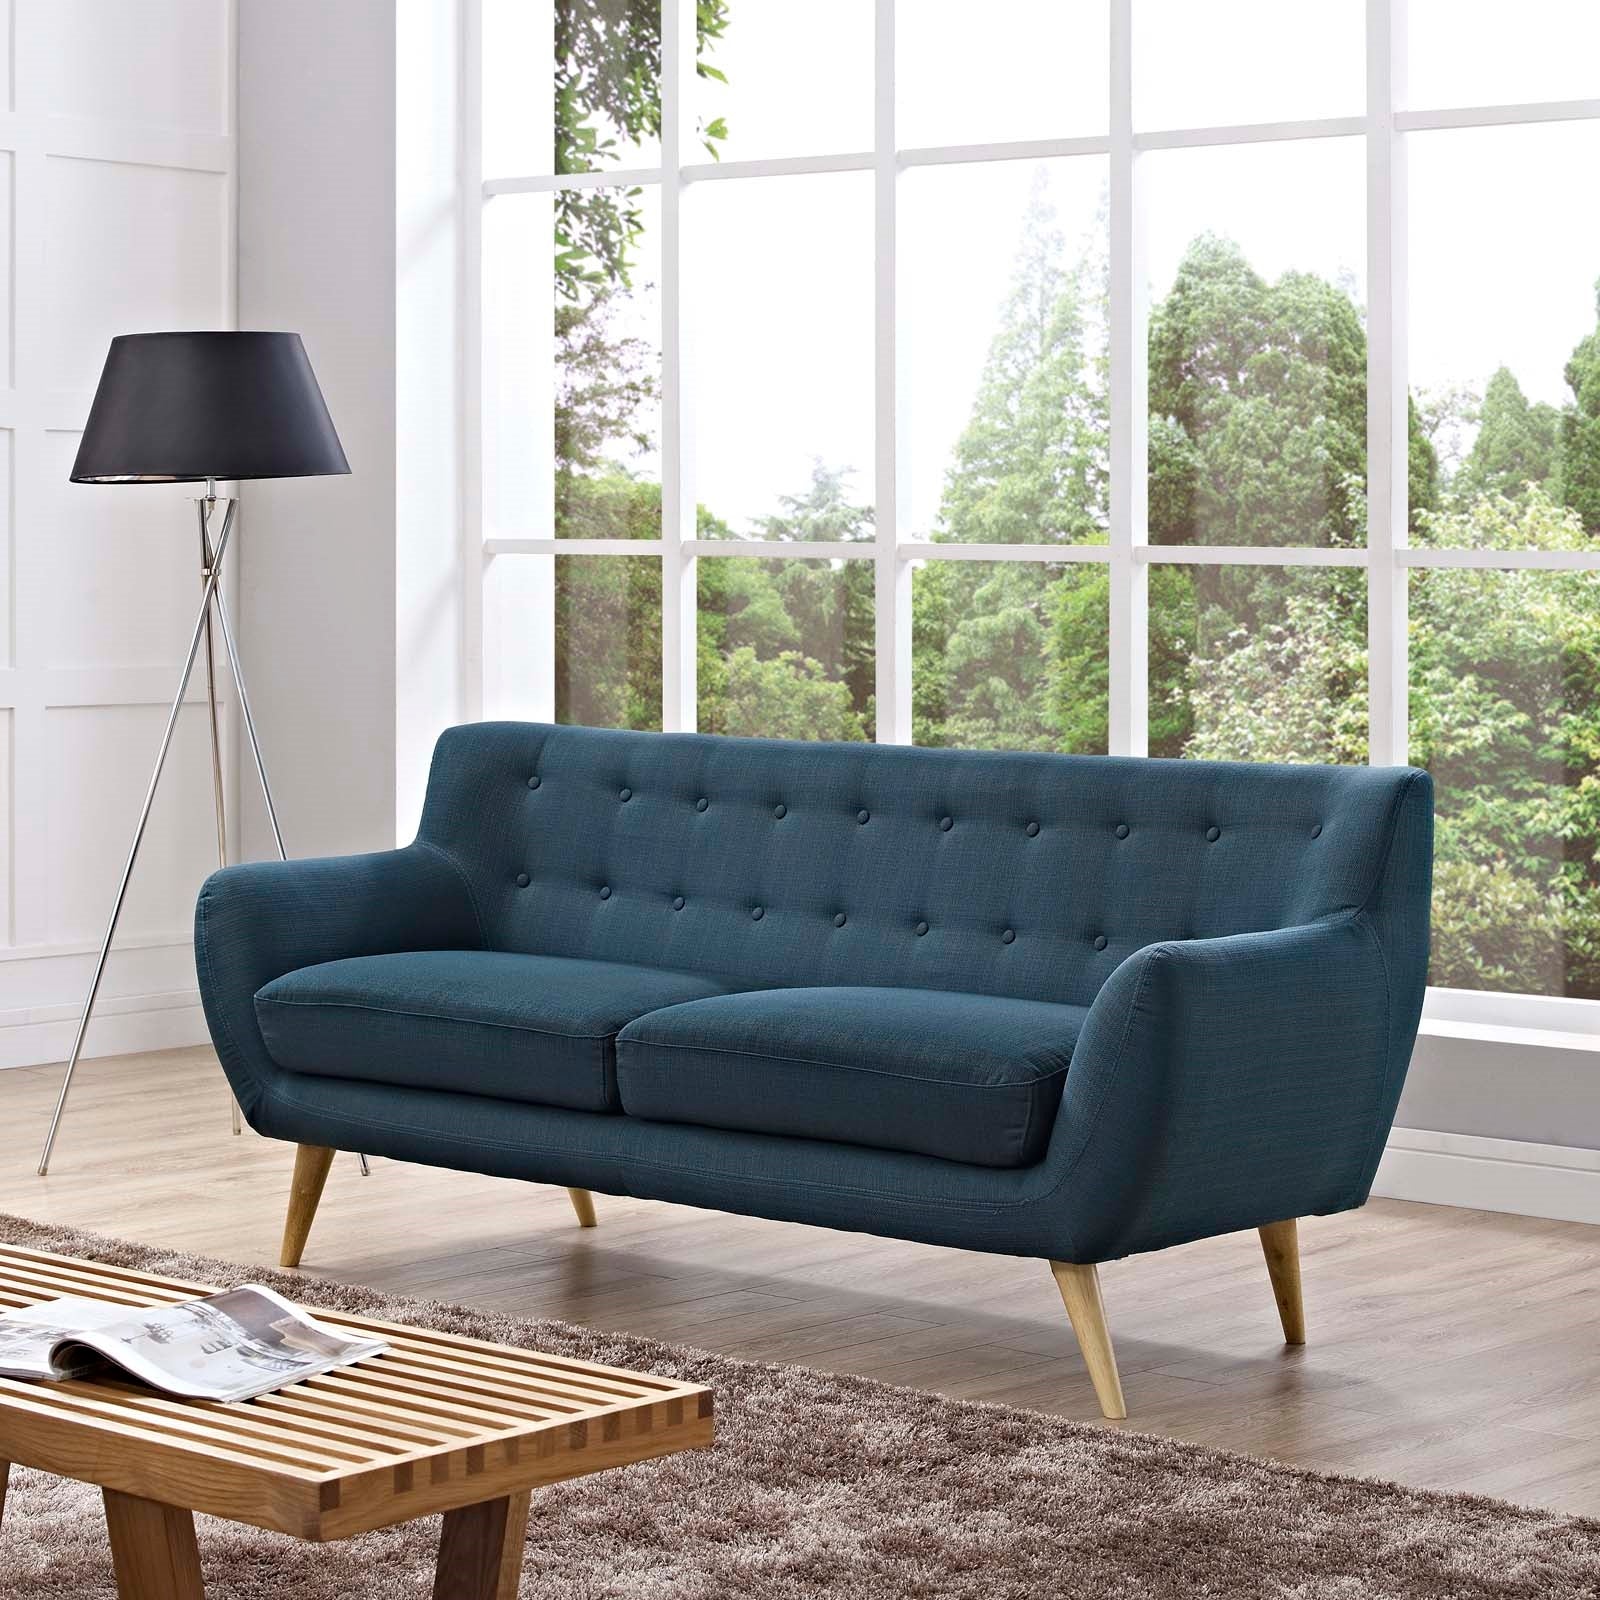 Sofá tapizado de tela en azul Silo Notable Mobiliario en una sala moderna.